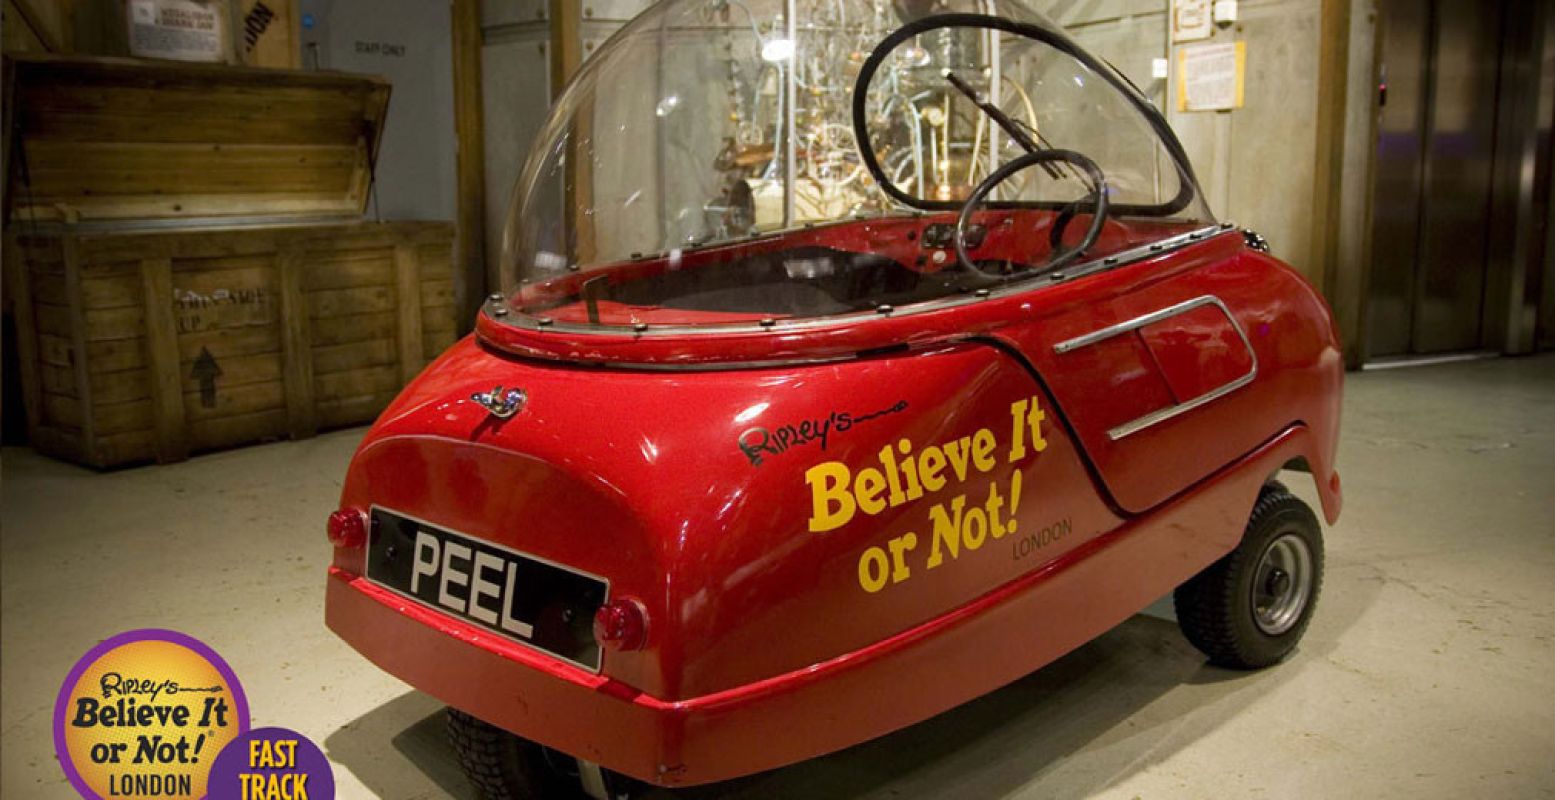 Peel Car, de kleinste auto ter wereld. Foto: Ripley's London